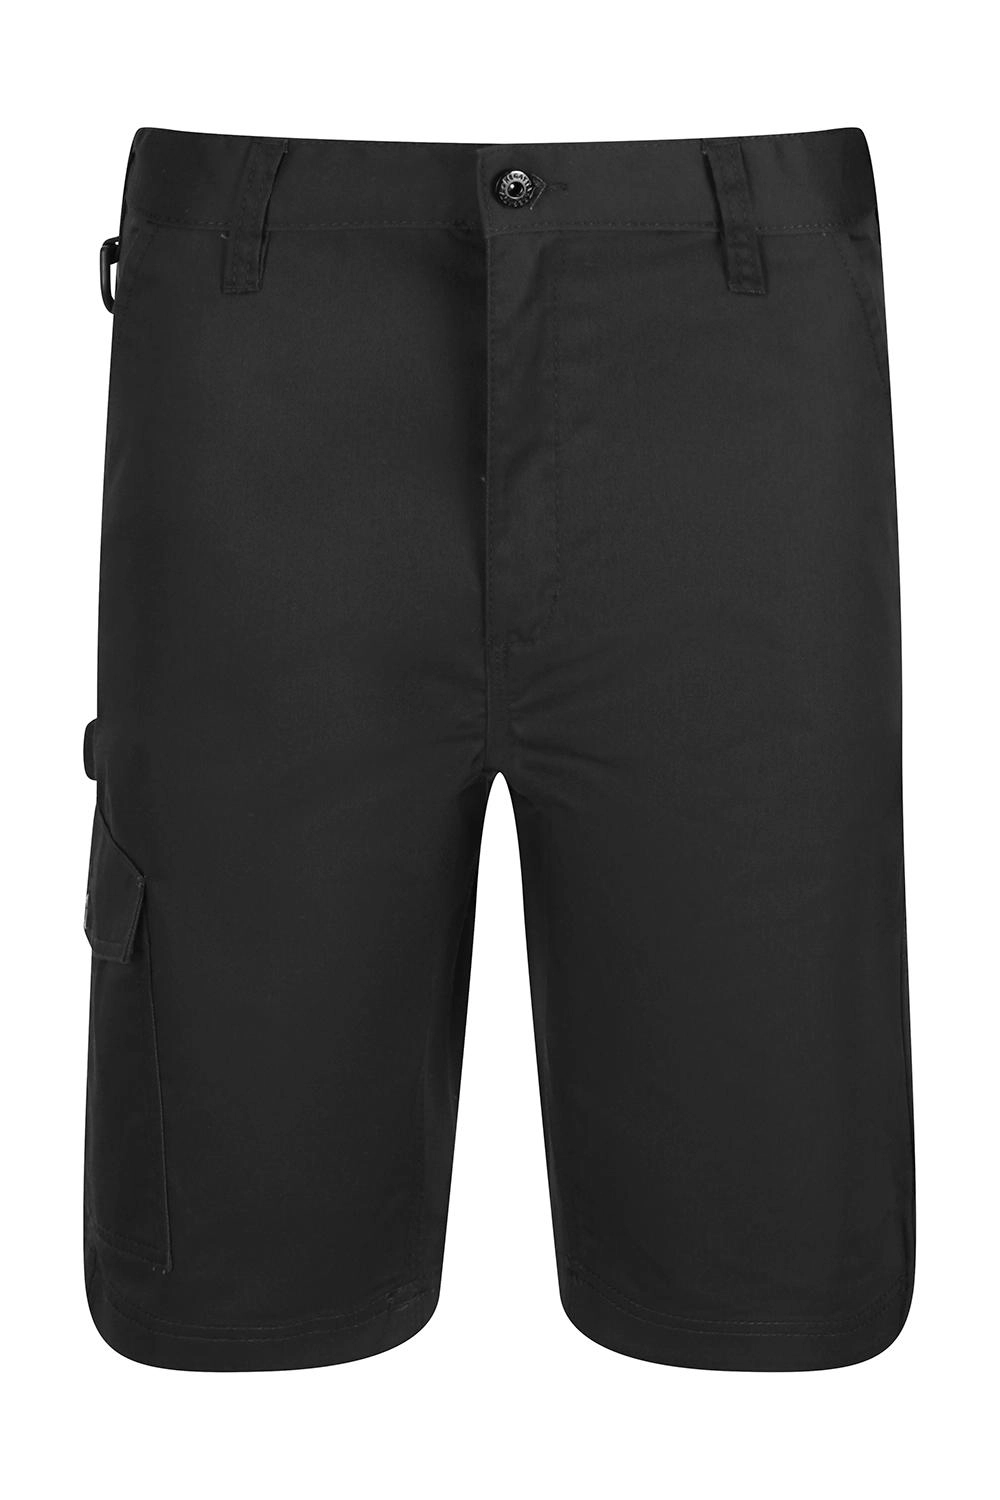 Pro Cargo Shorts zum Besticken und Bedrucken in der Farbe Black mit Ihren Logo, Schriftzug oder Motiv.